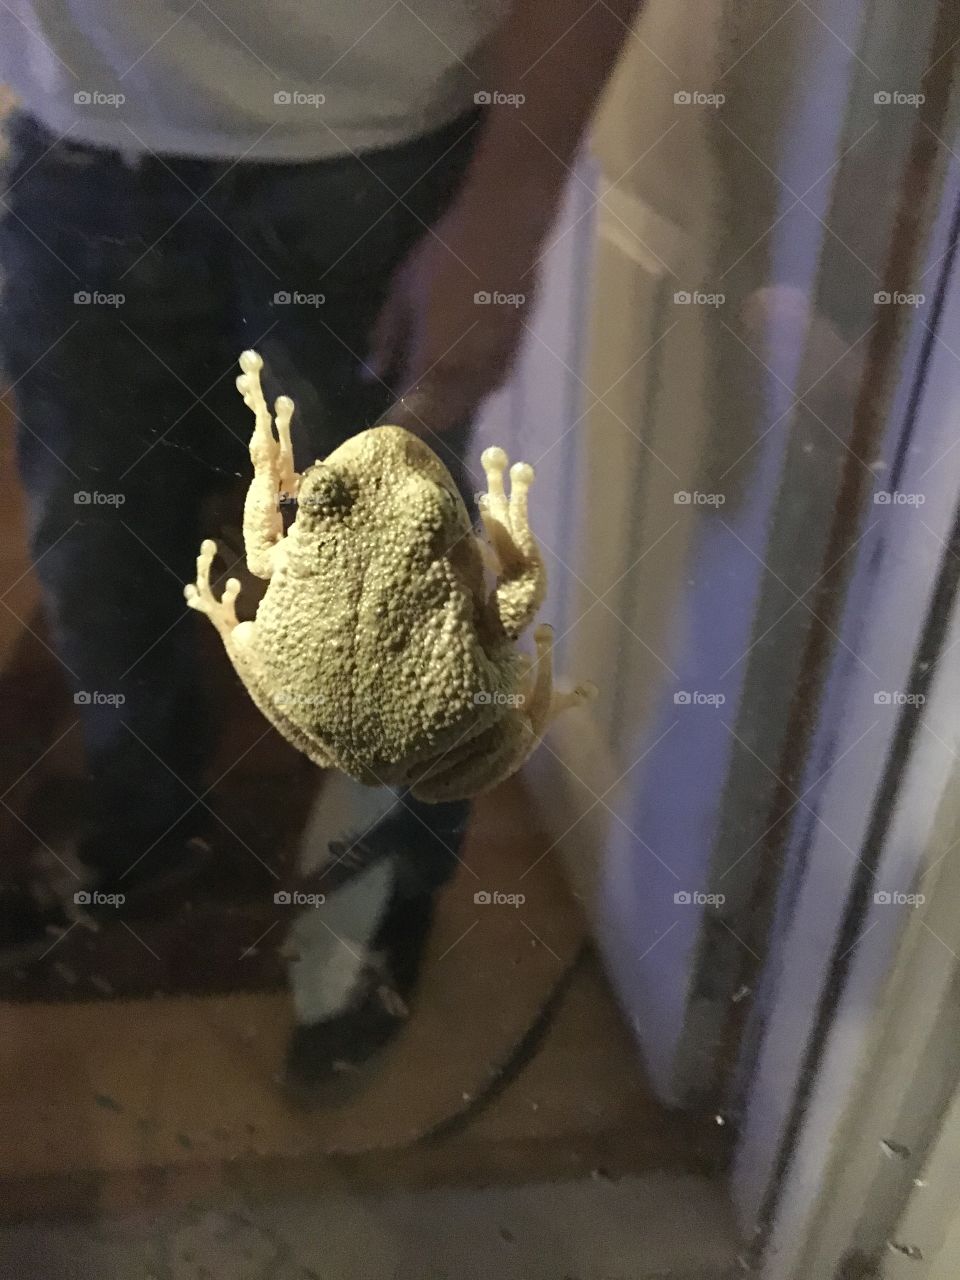 Frog on the door